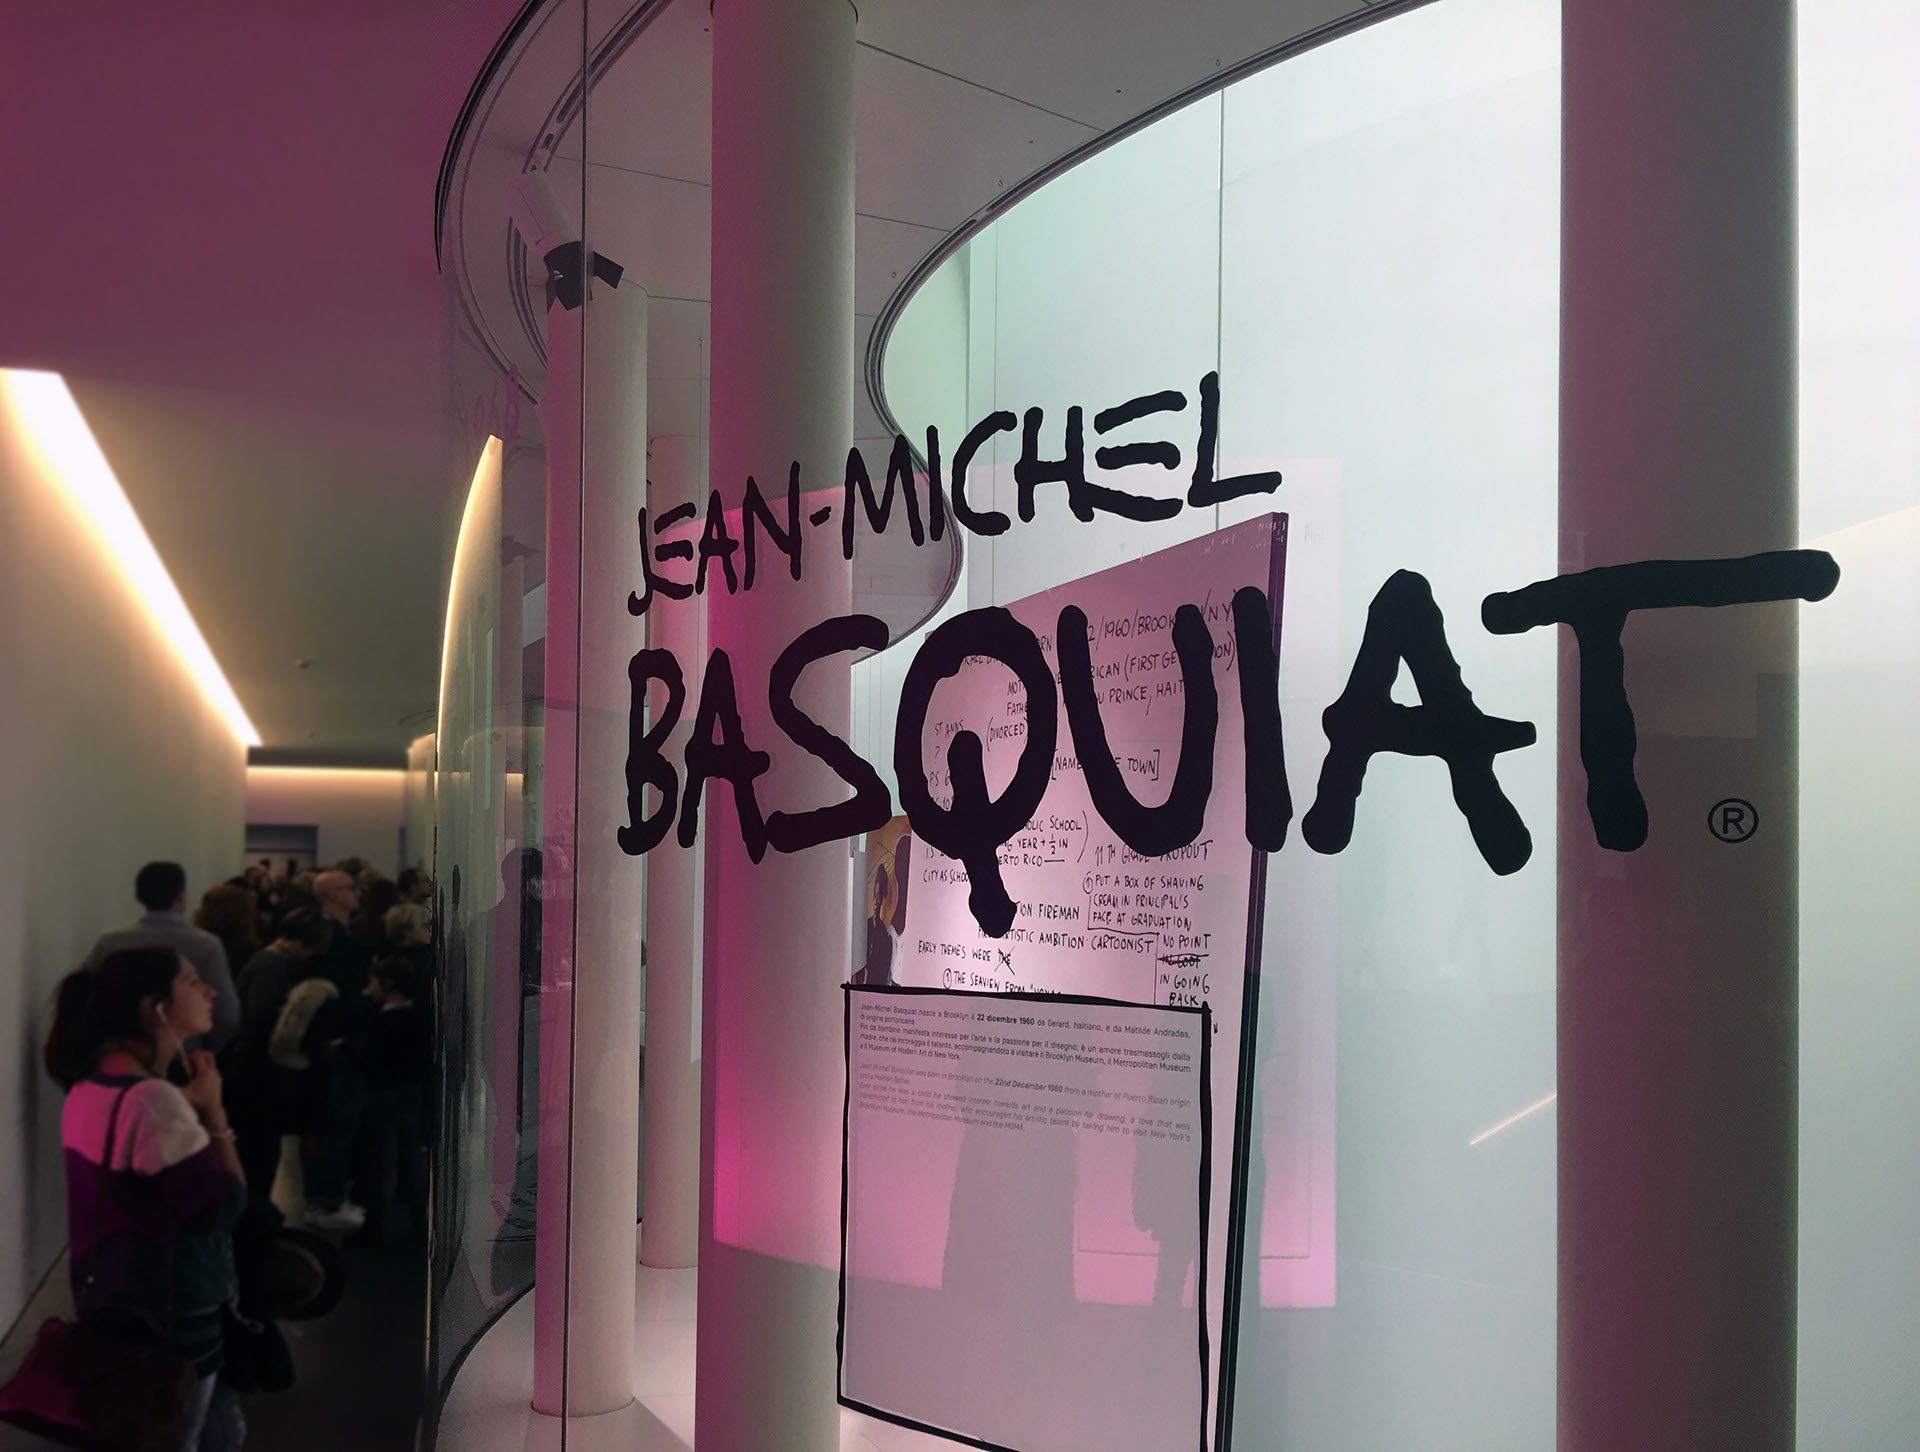 Mudec - Mostra Basquiat on Behance